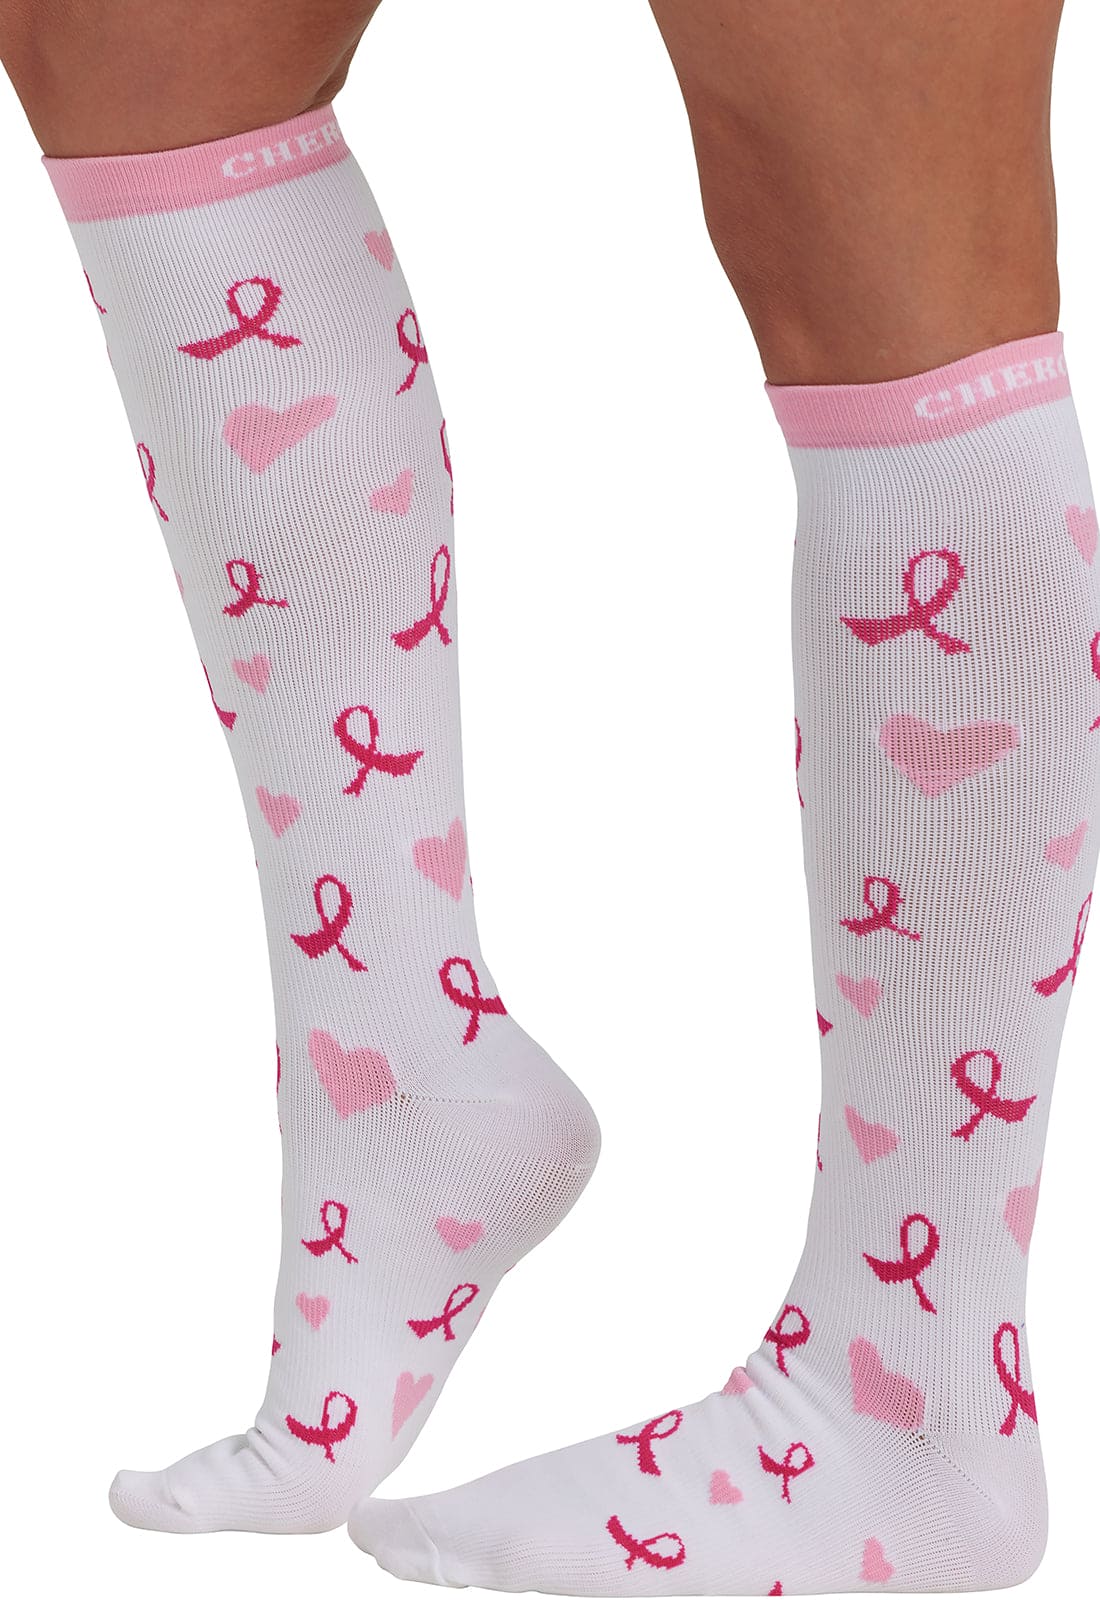 Women's 10-15mmHg Support Socks in Heartfelt Ribbons